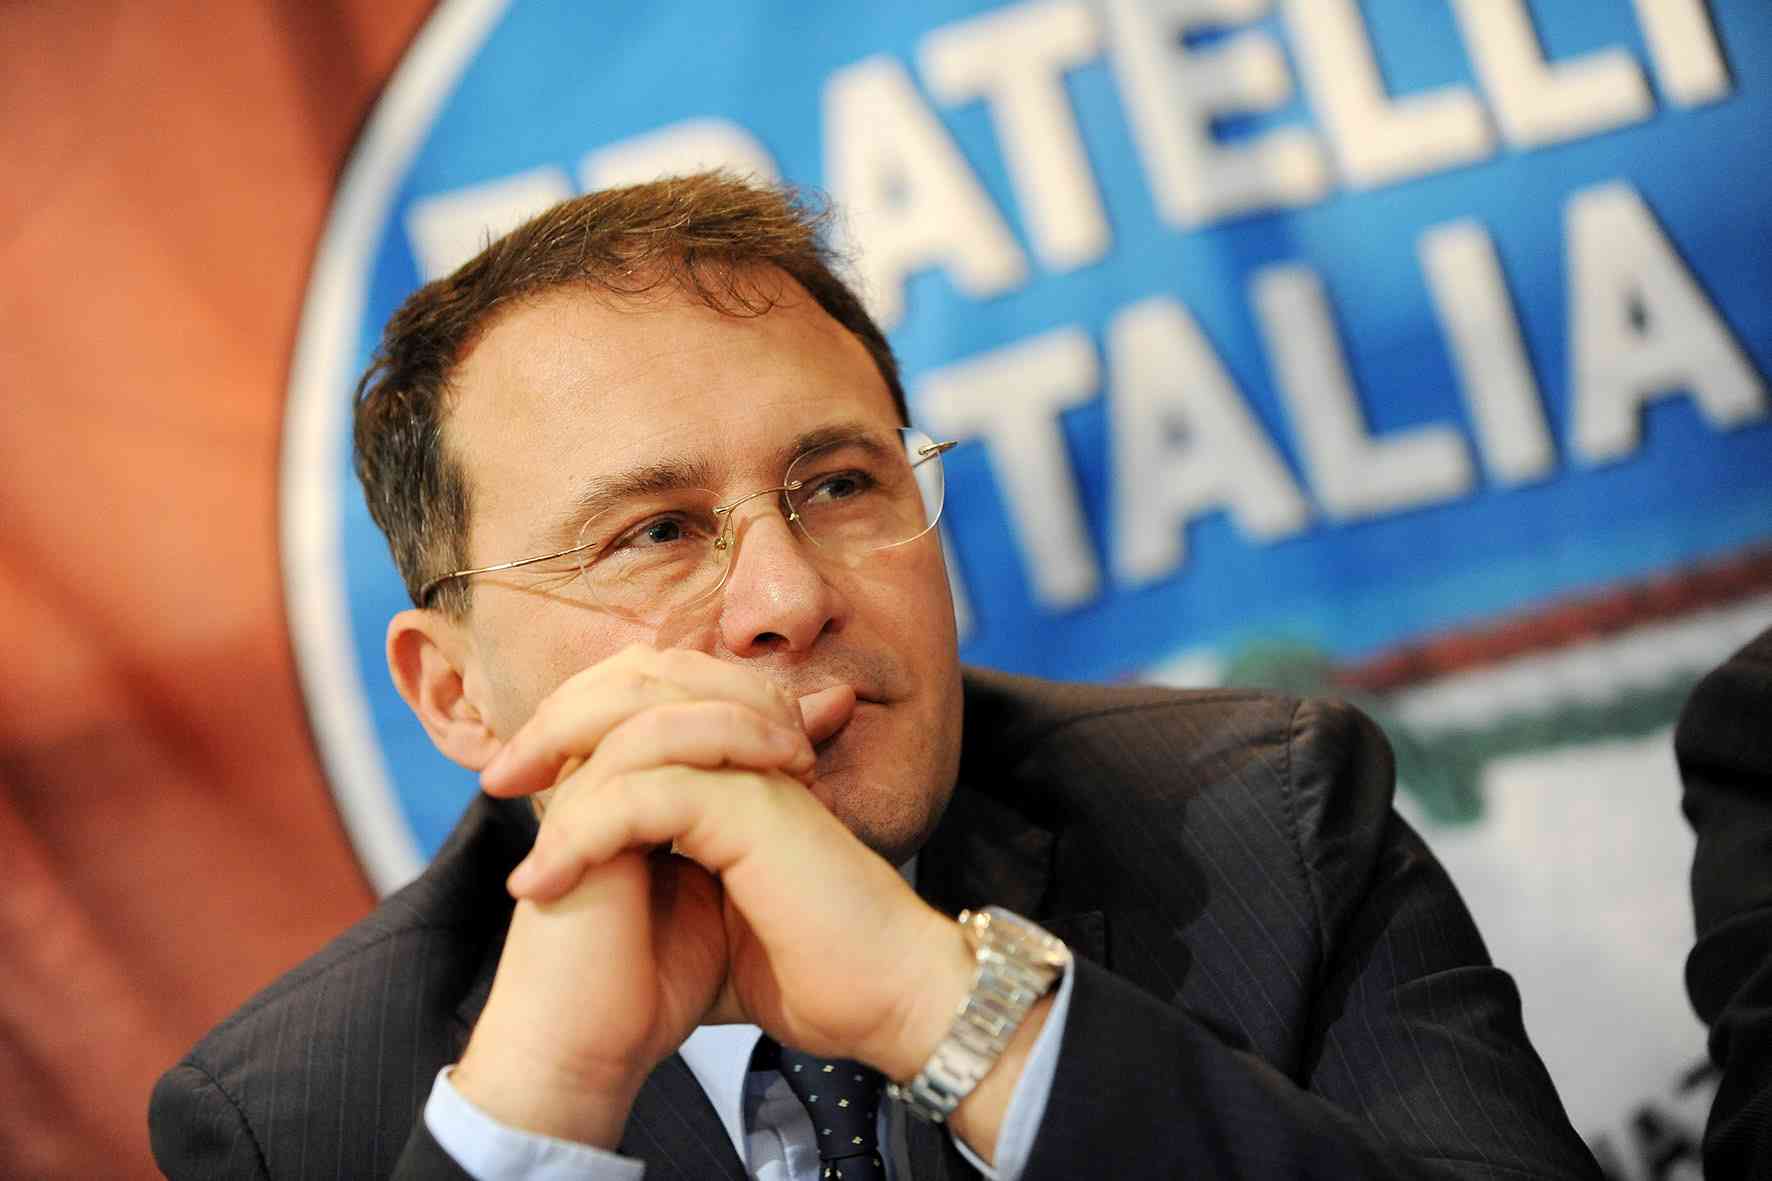 Campania: on. Cirielli “Presidente De Luca attacca Meloni per nascondere catastrofe sanitaria”